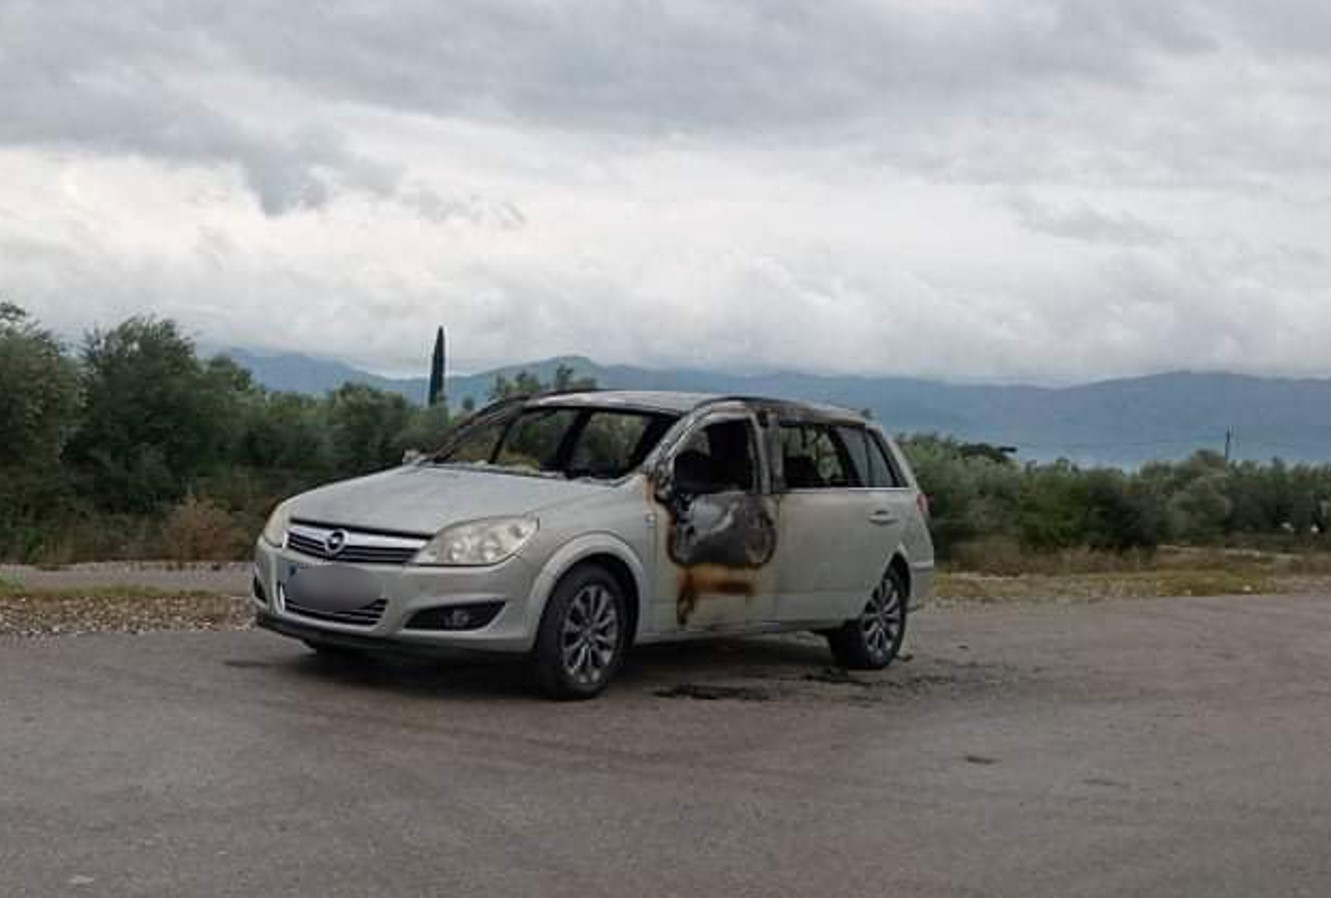 Περίεργη υπόθεση στο Αγρίνιο: έκλεψαν και πυρπόλησαν αυτοκίνητο